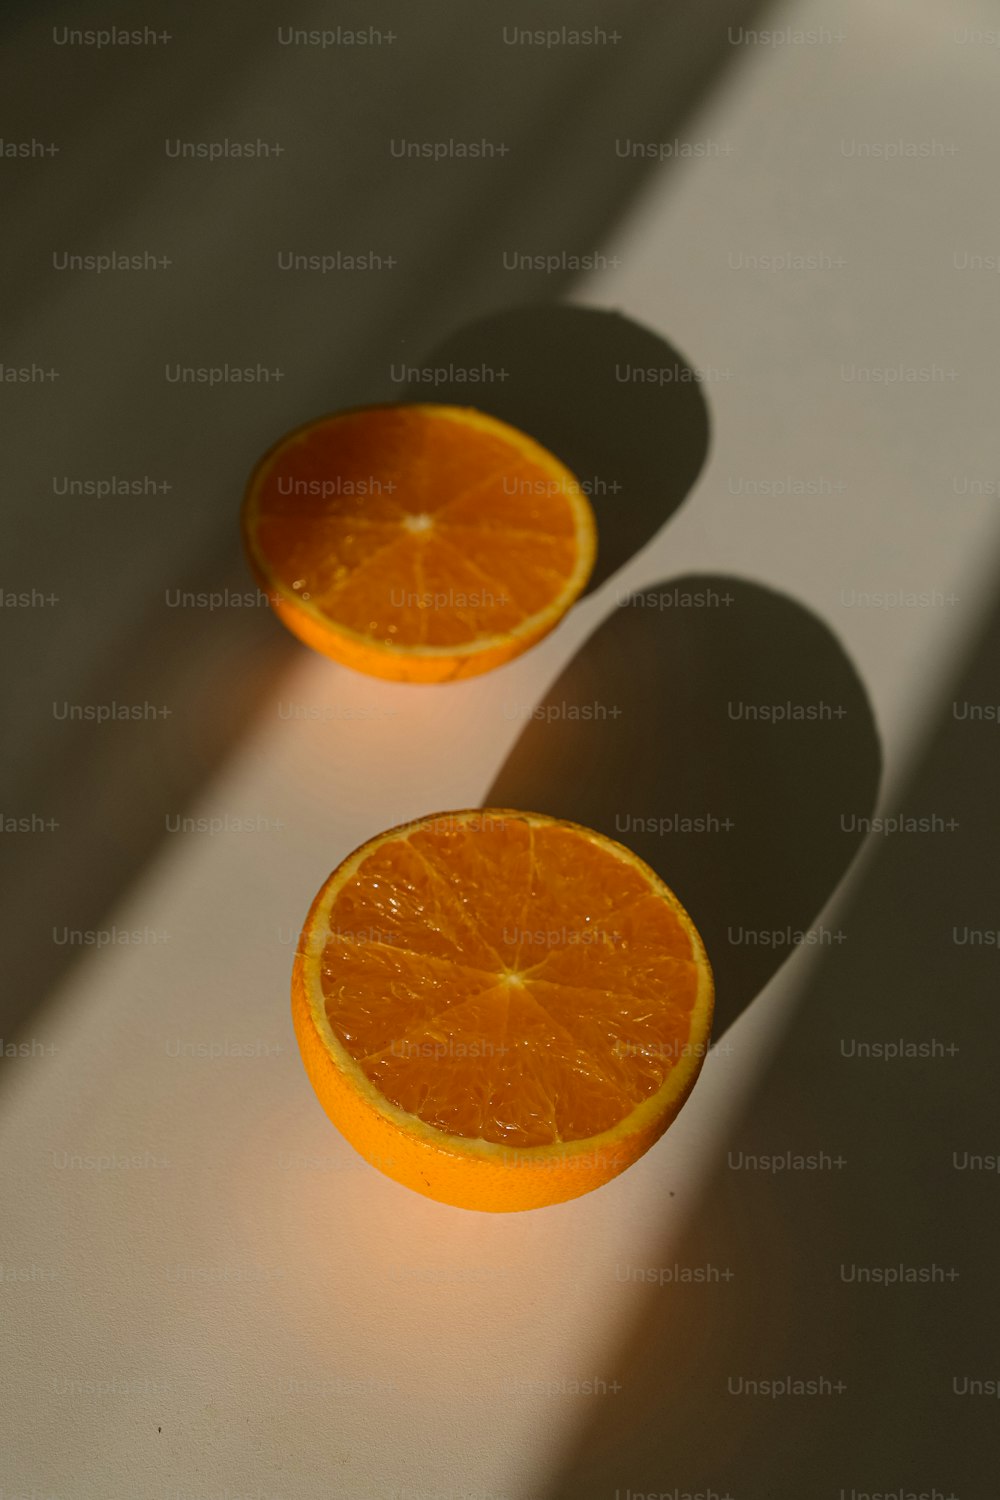 zwei Orangenhälften, die auf einem Tisch sitzen